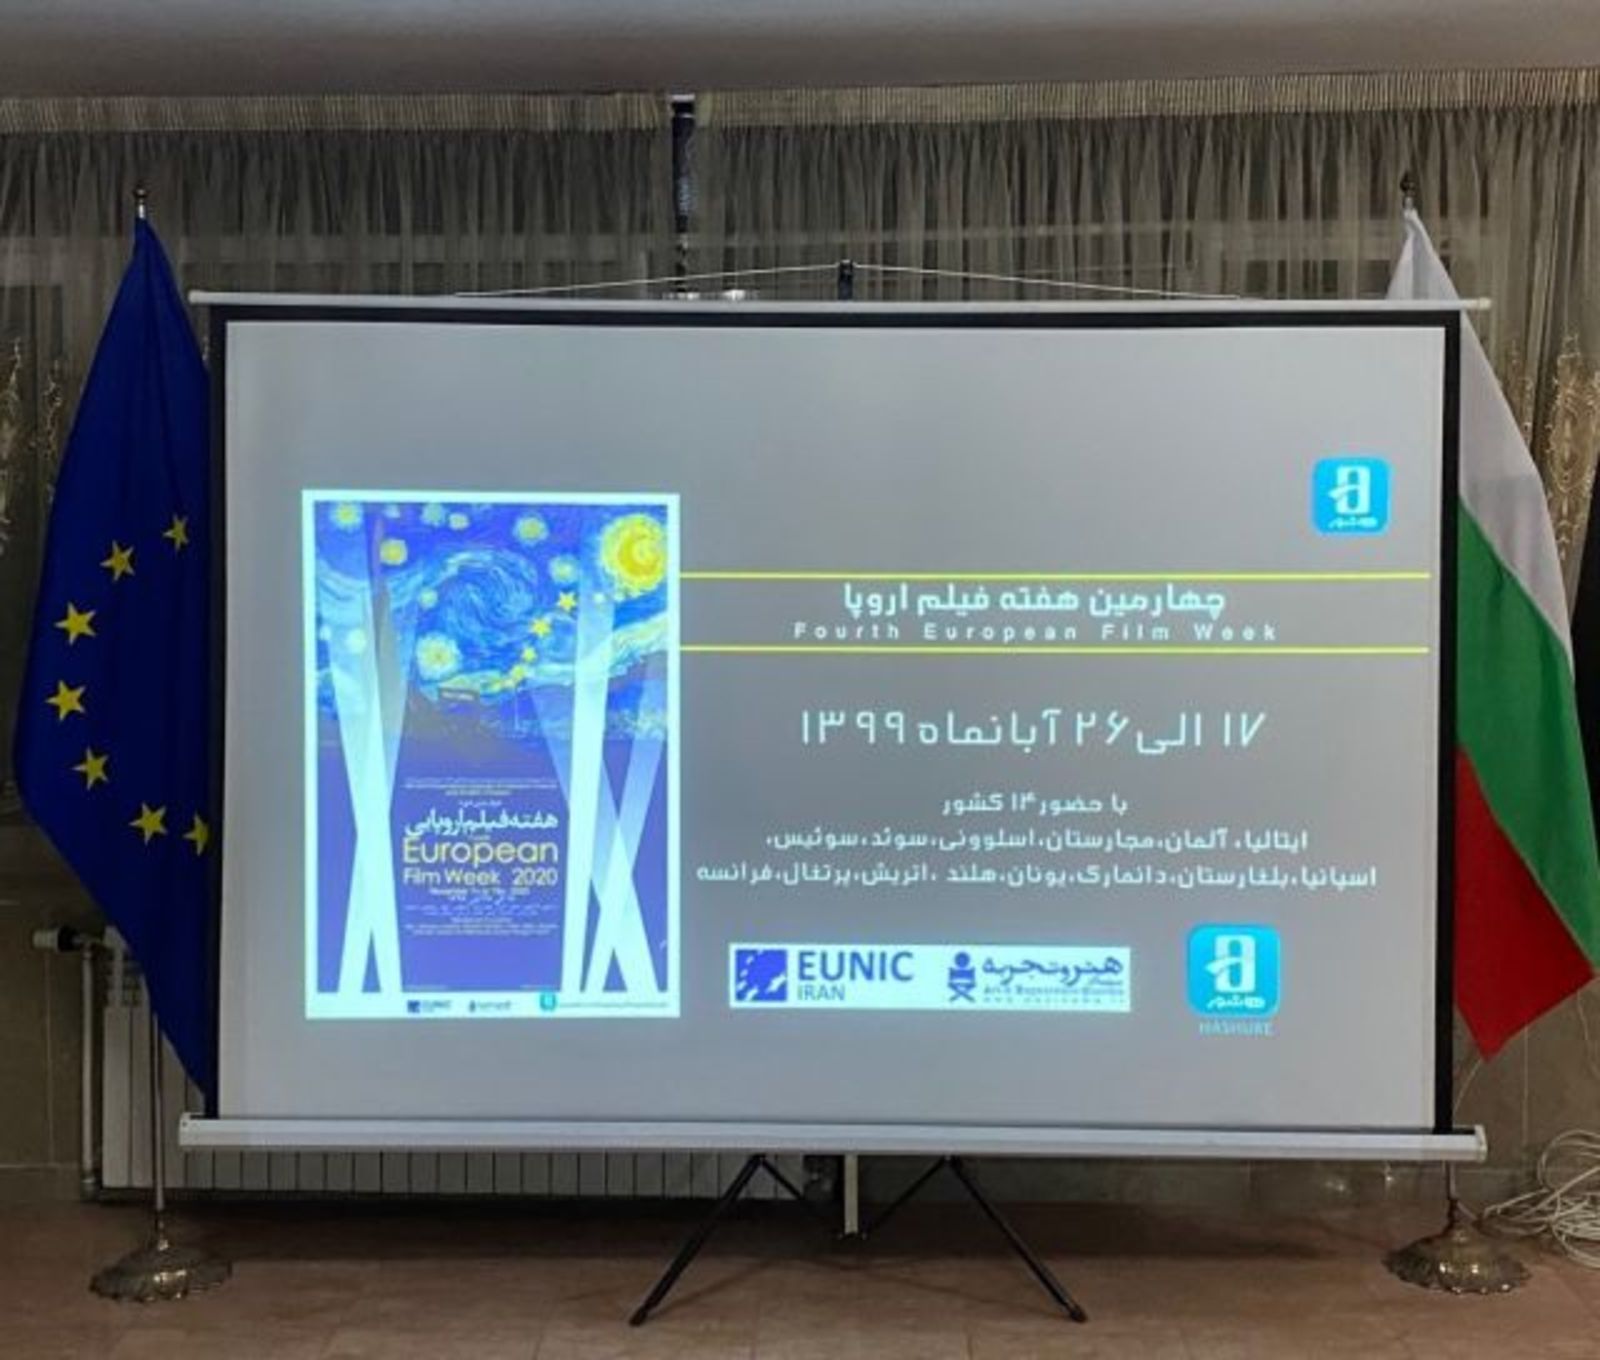 Българско участие на Европейската филмова седмица, организирана от EUNIC Иран